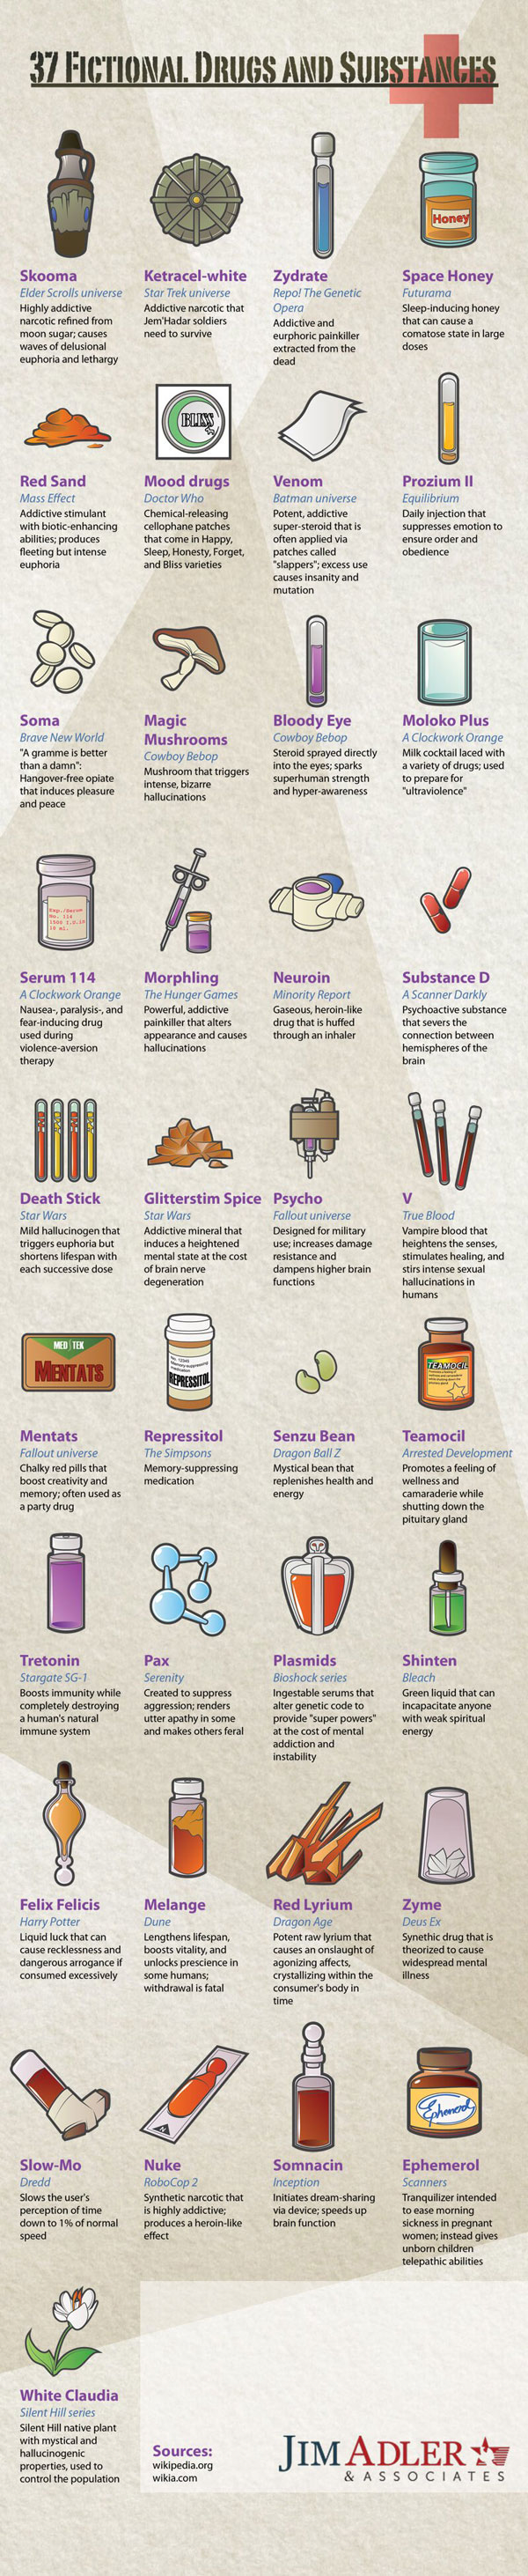 drugs-&-substances